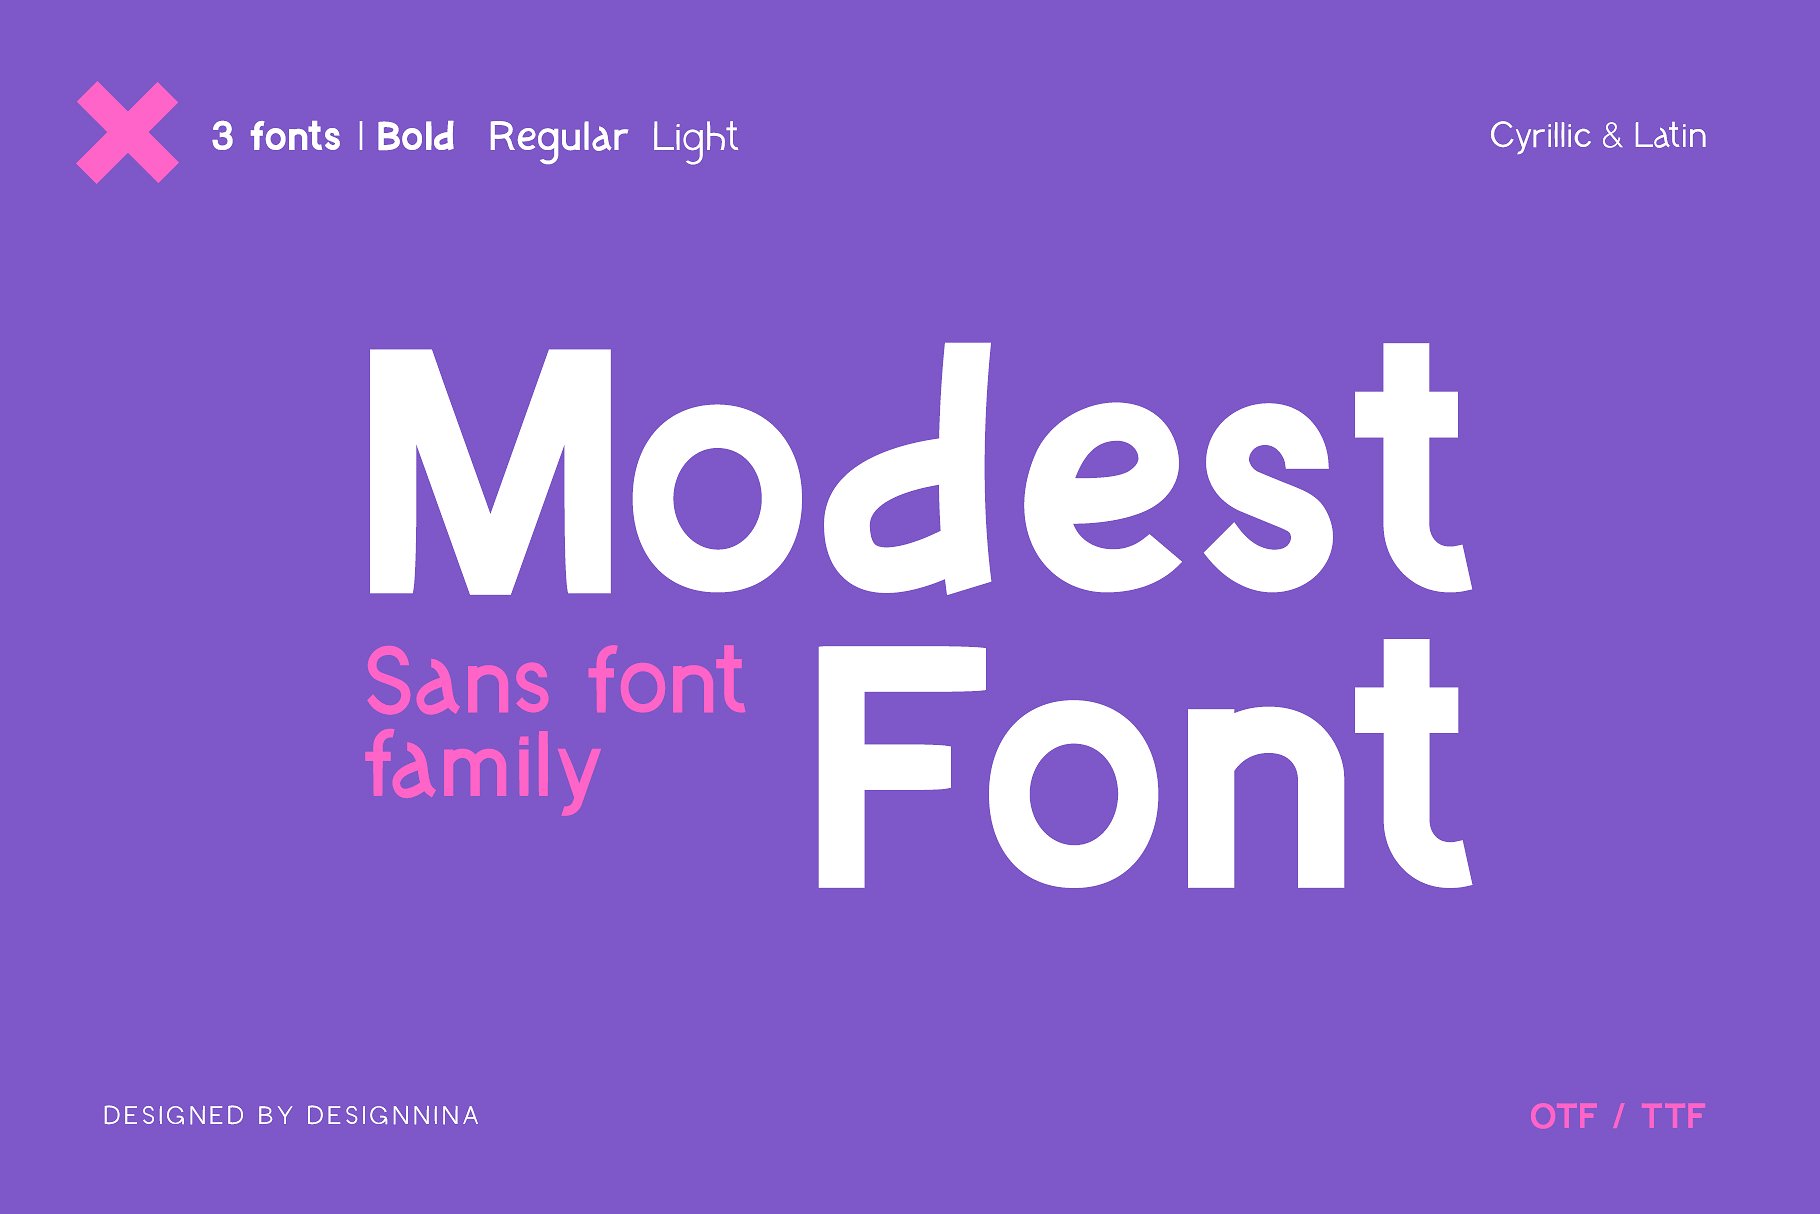 Ejemplo de fuente Modest Font Bold